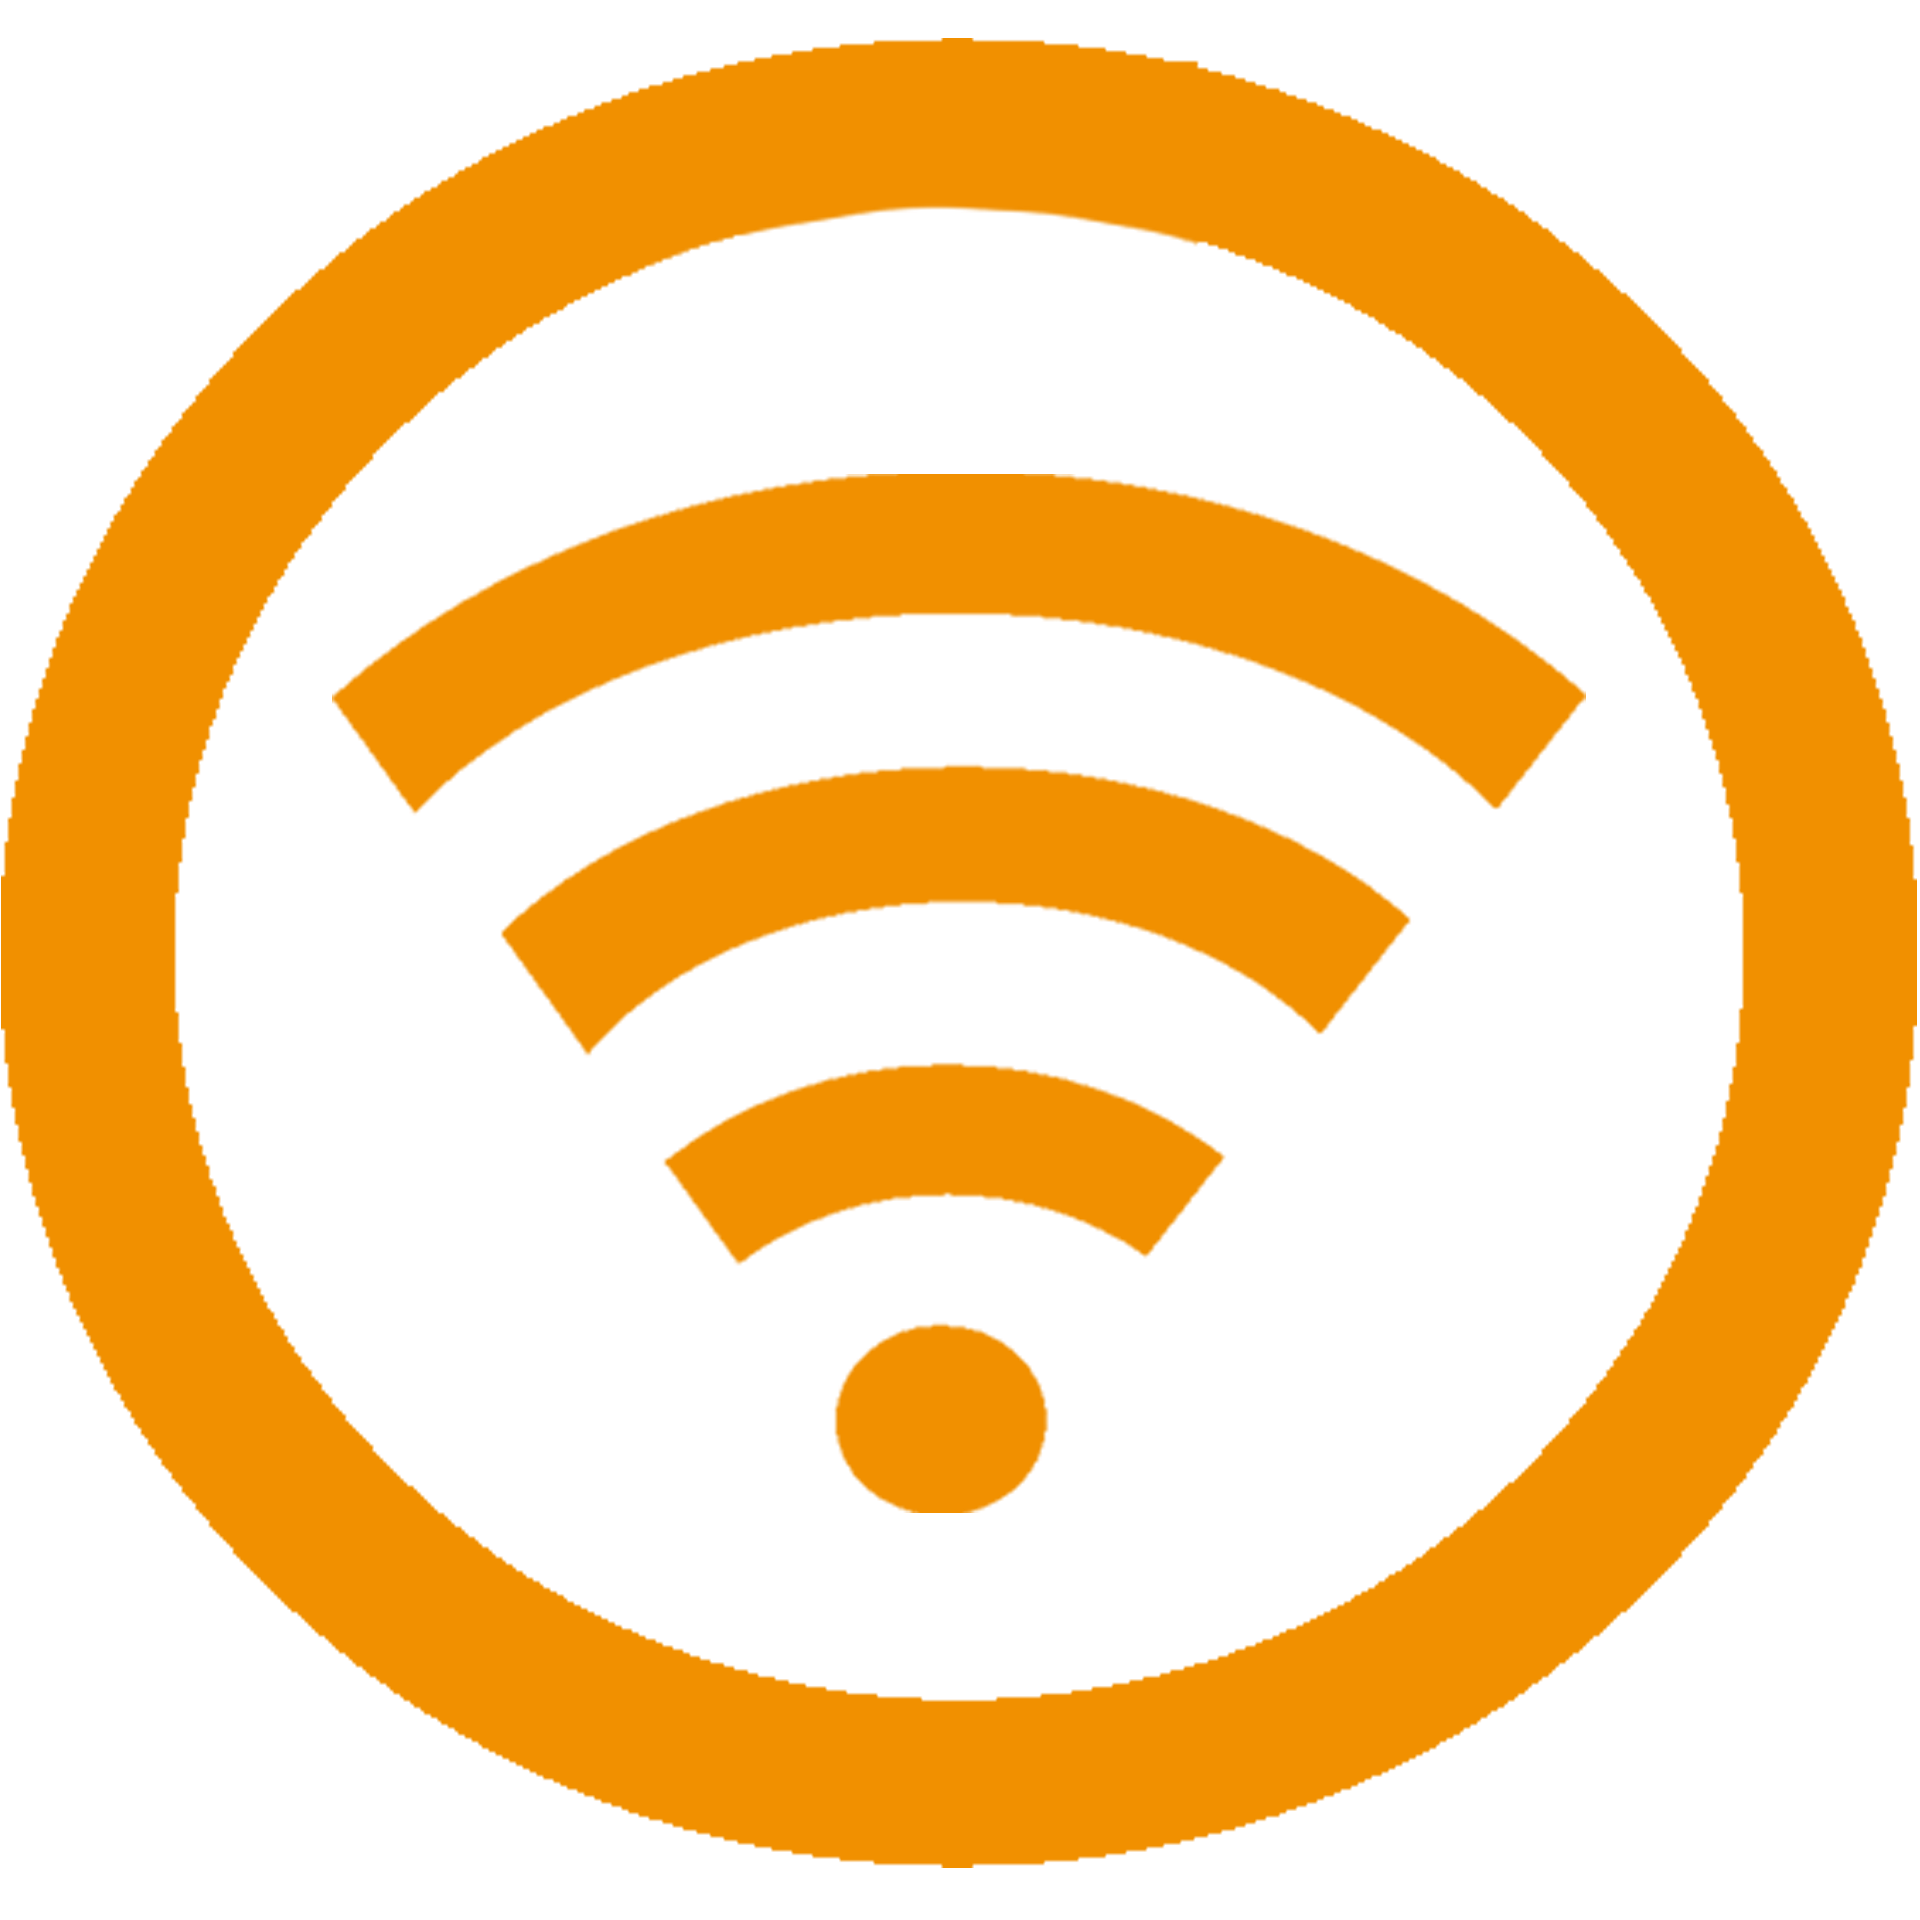 Orange WiFi Logo - Wifi Icon Yellow PNG Image - PurePNG | Free transparent CC0 PNG ...